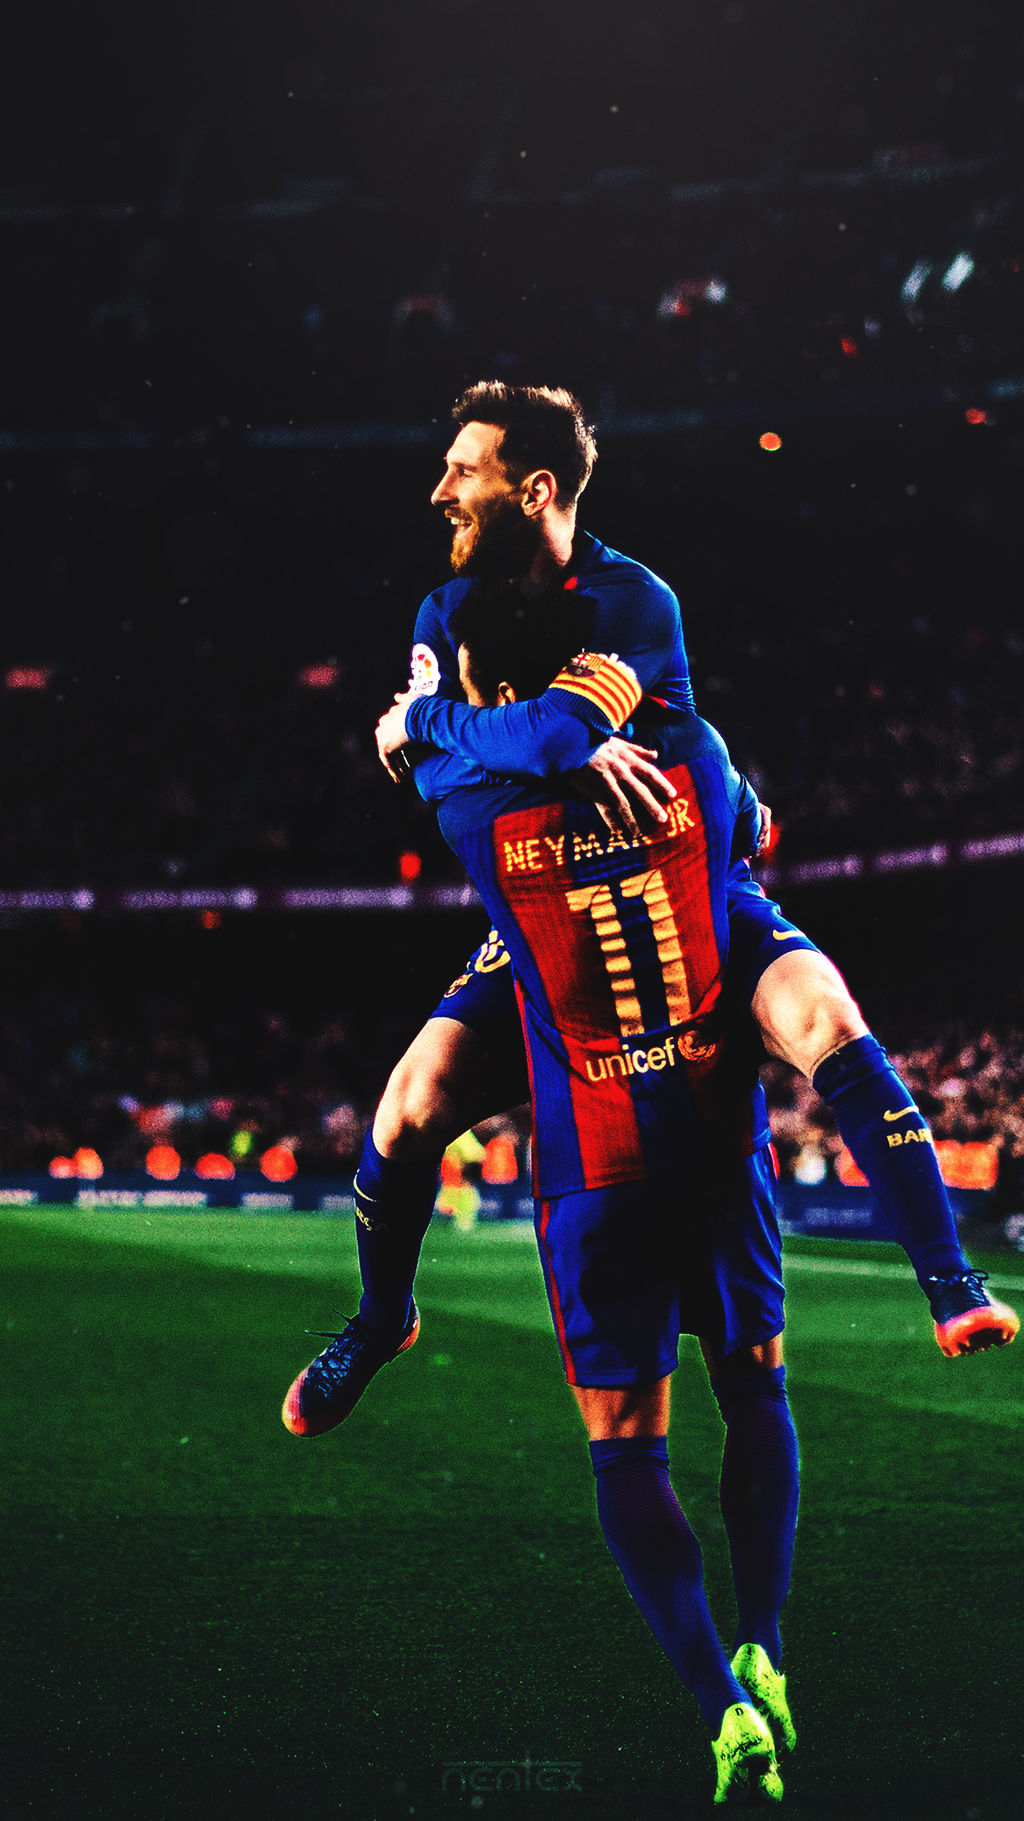 Sự kết hợp hoàn hảo giữa Messi và Neymar chắc chắn sẽ mang đến những pha bóng đẹp mắt và kịch tính trên sân cỏ. Hãy xem họ làm thế nào để dẫn dắt đội bóng của họ đến chiến thắng!